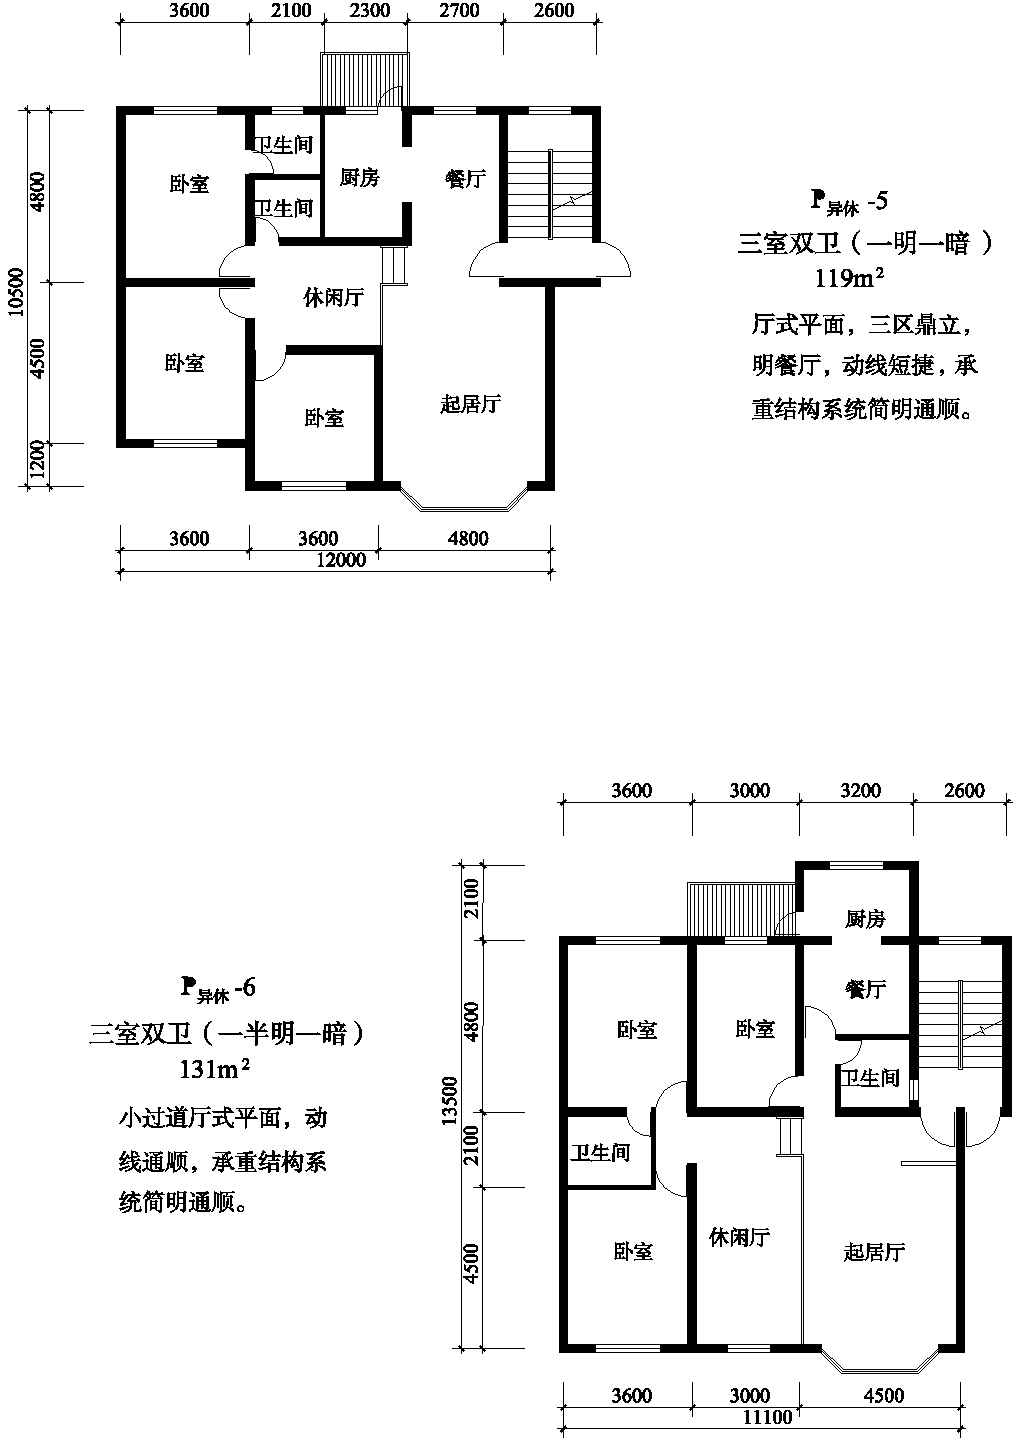 三室131/119平方单元式住宅户型平面图纸